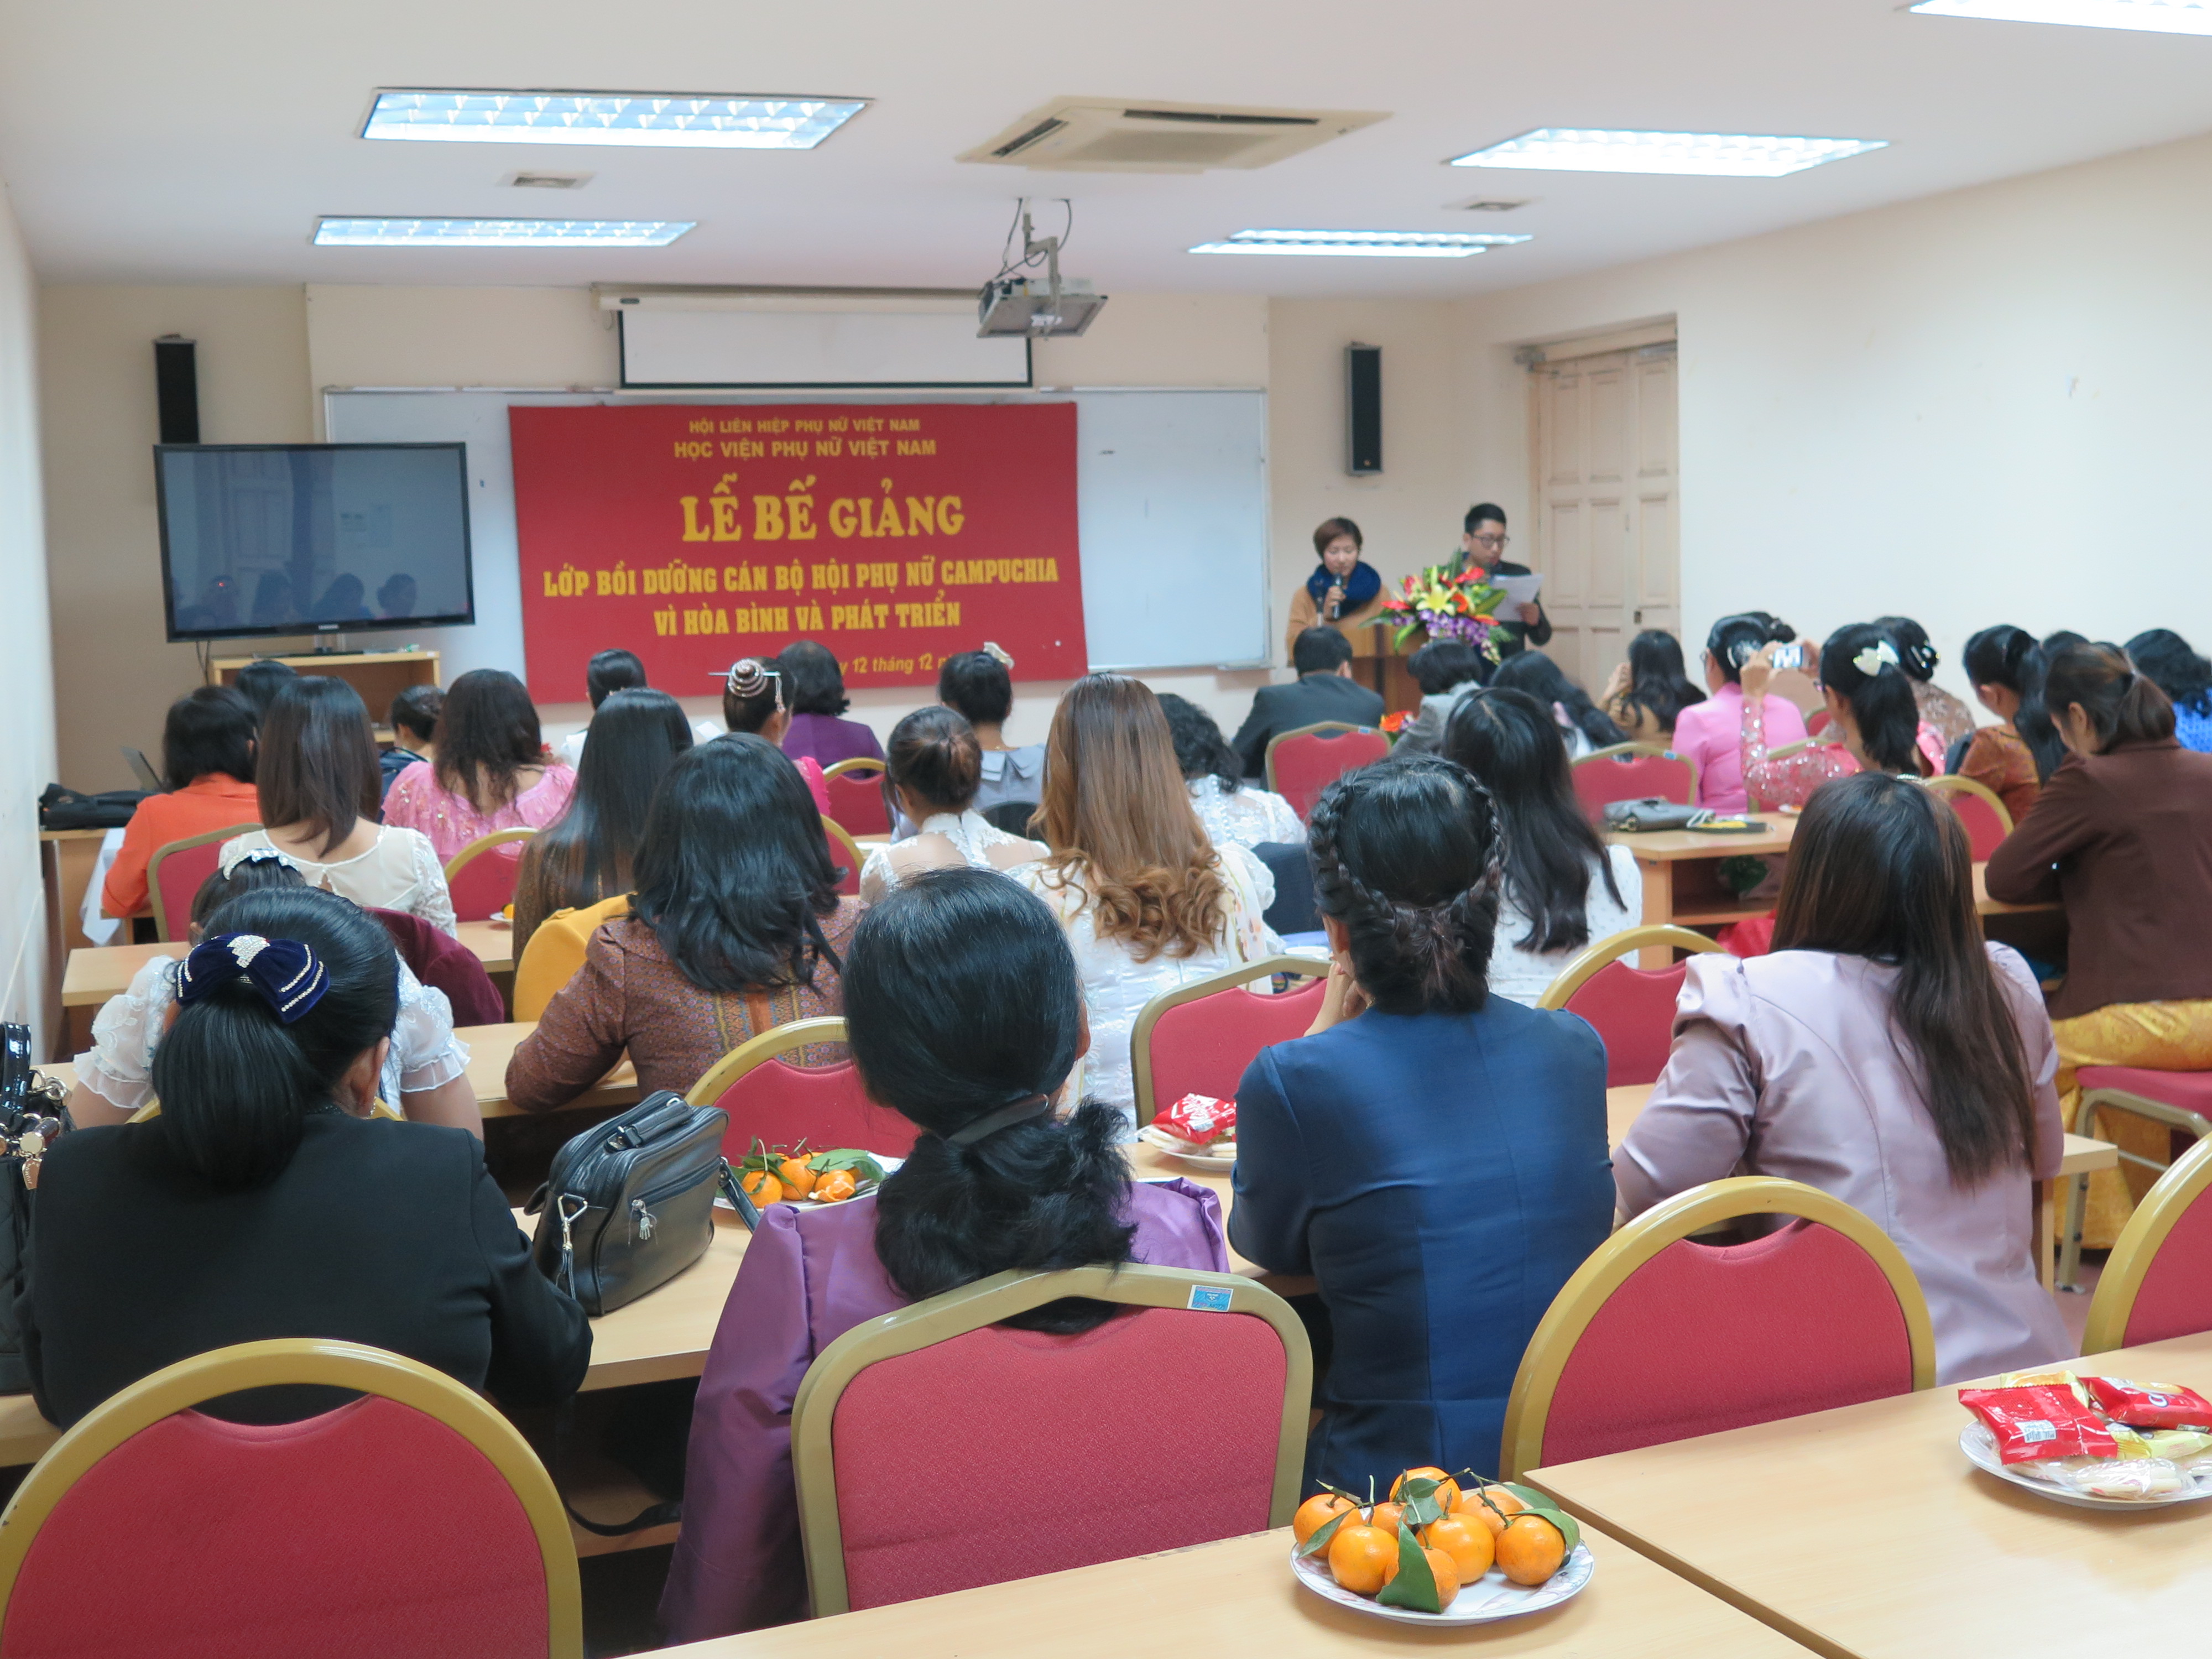 Lễ bế giảng lớp bồi dưỡng cán bộ phụ nữ Campuchia vì hòa bình và phát triển